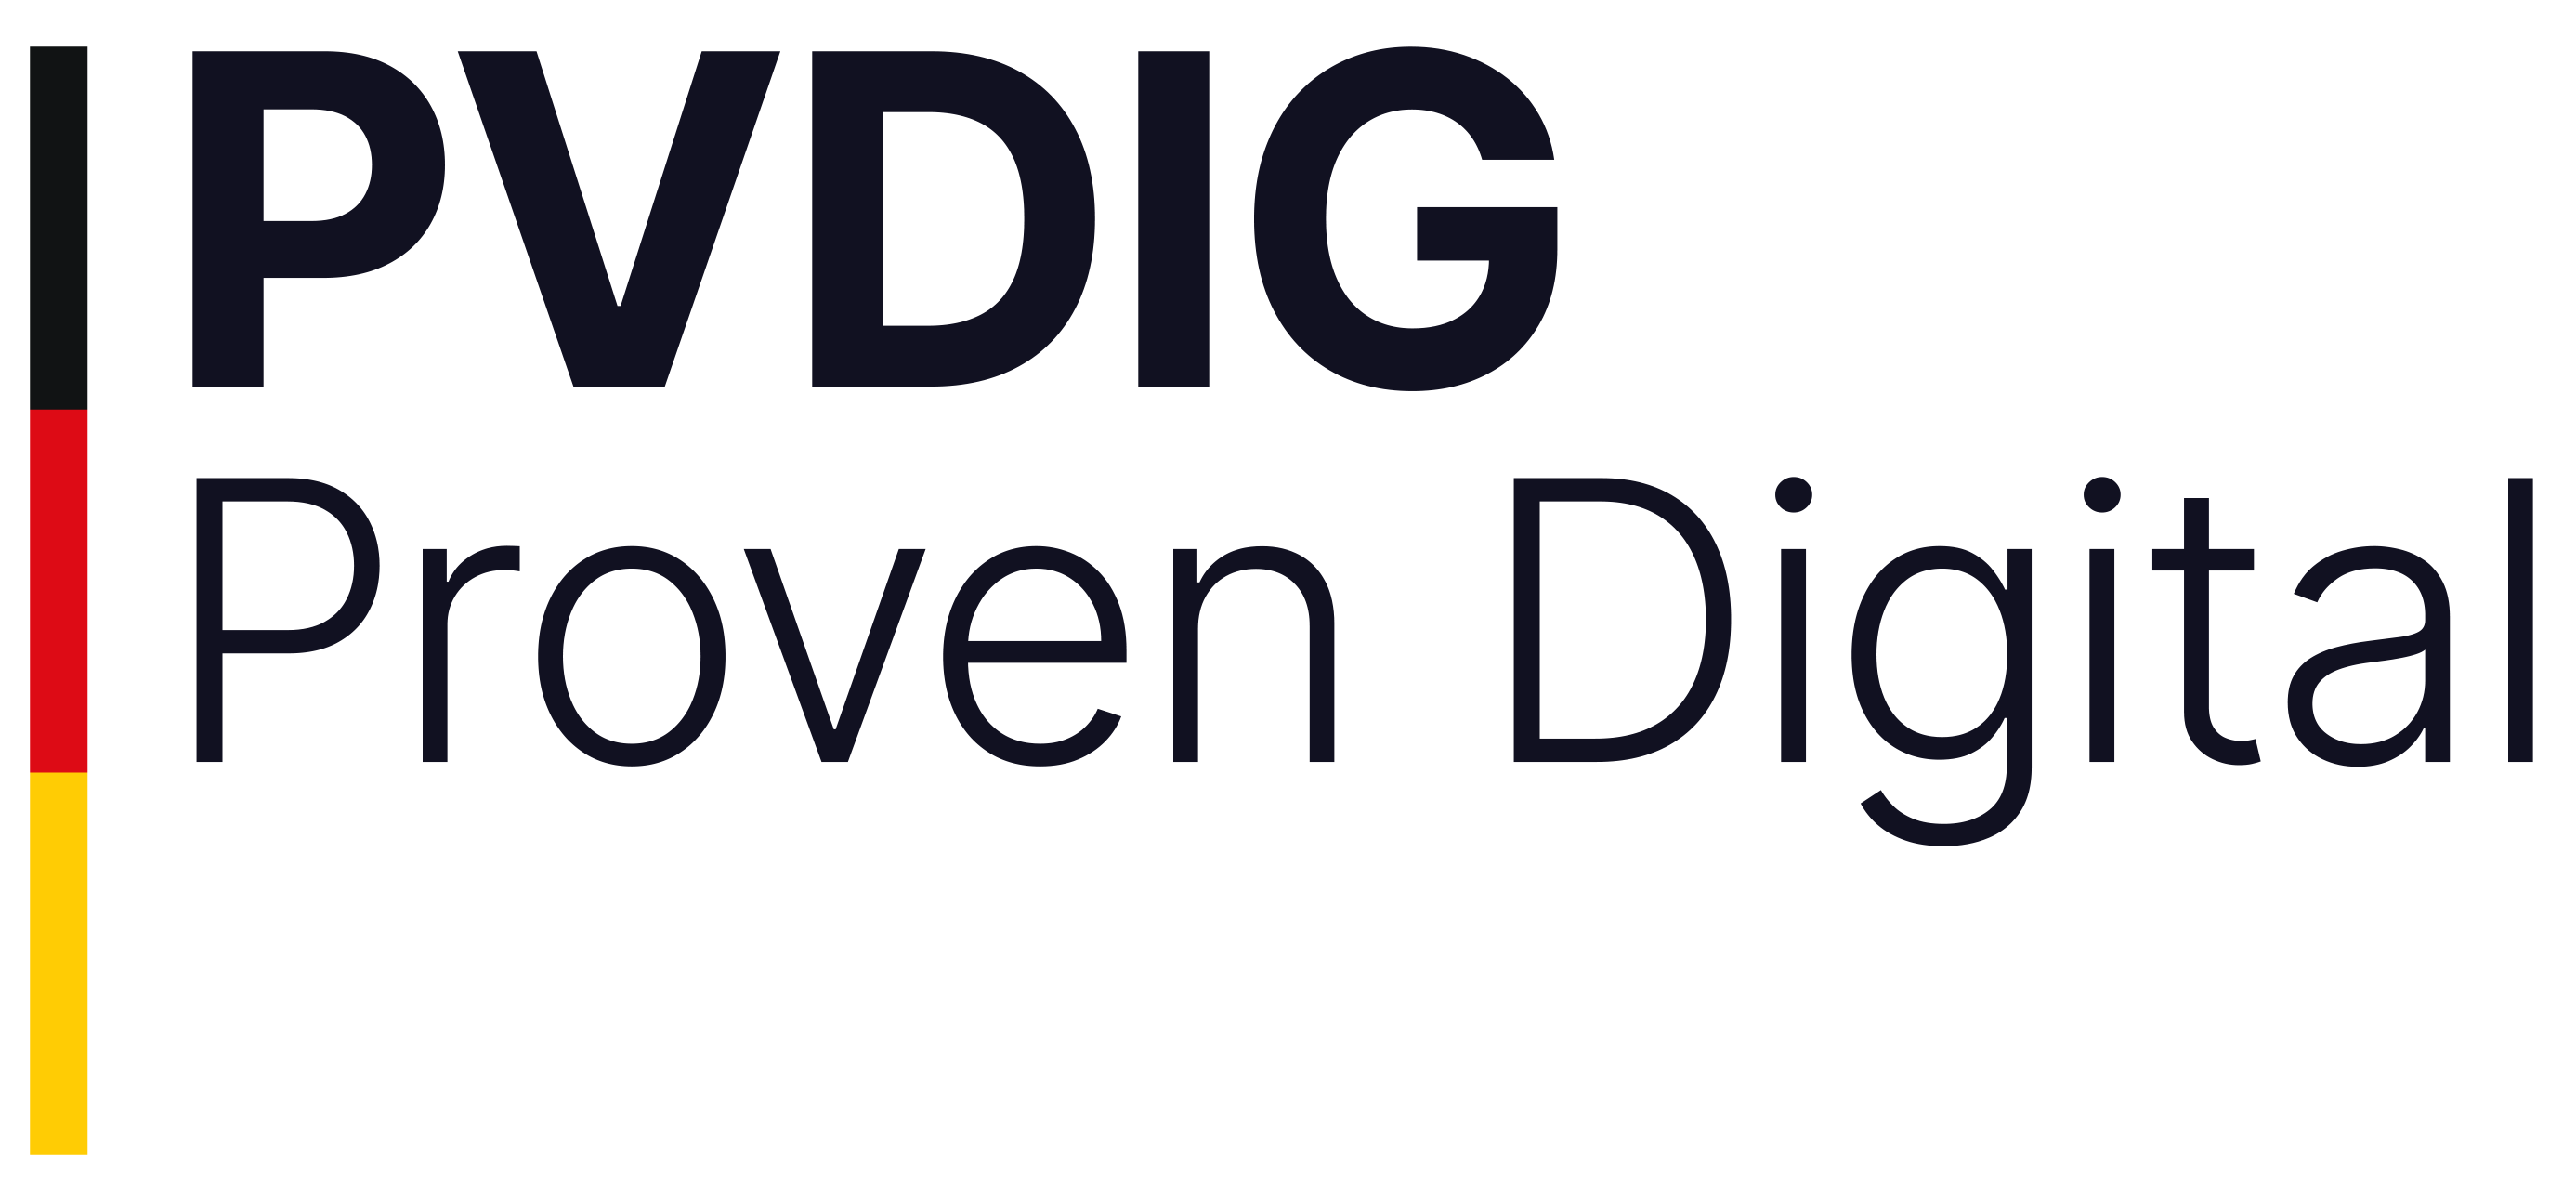 Proven Digital / PVDIG.eu